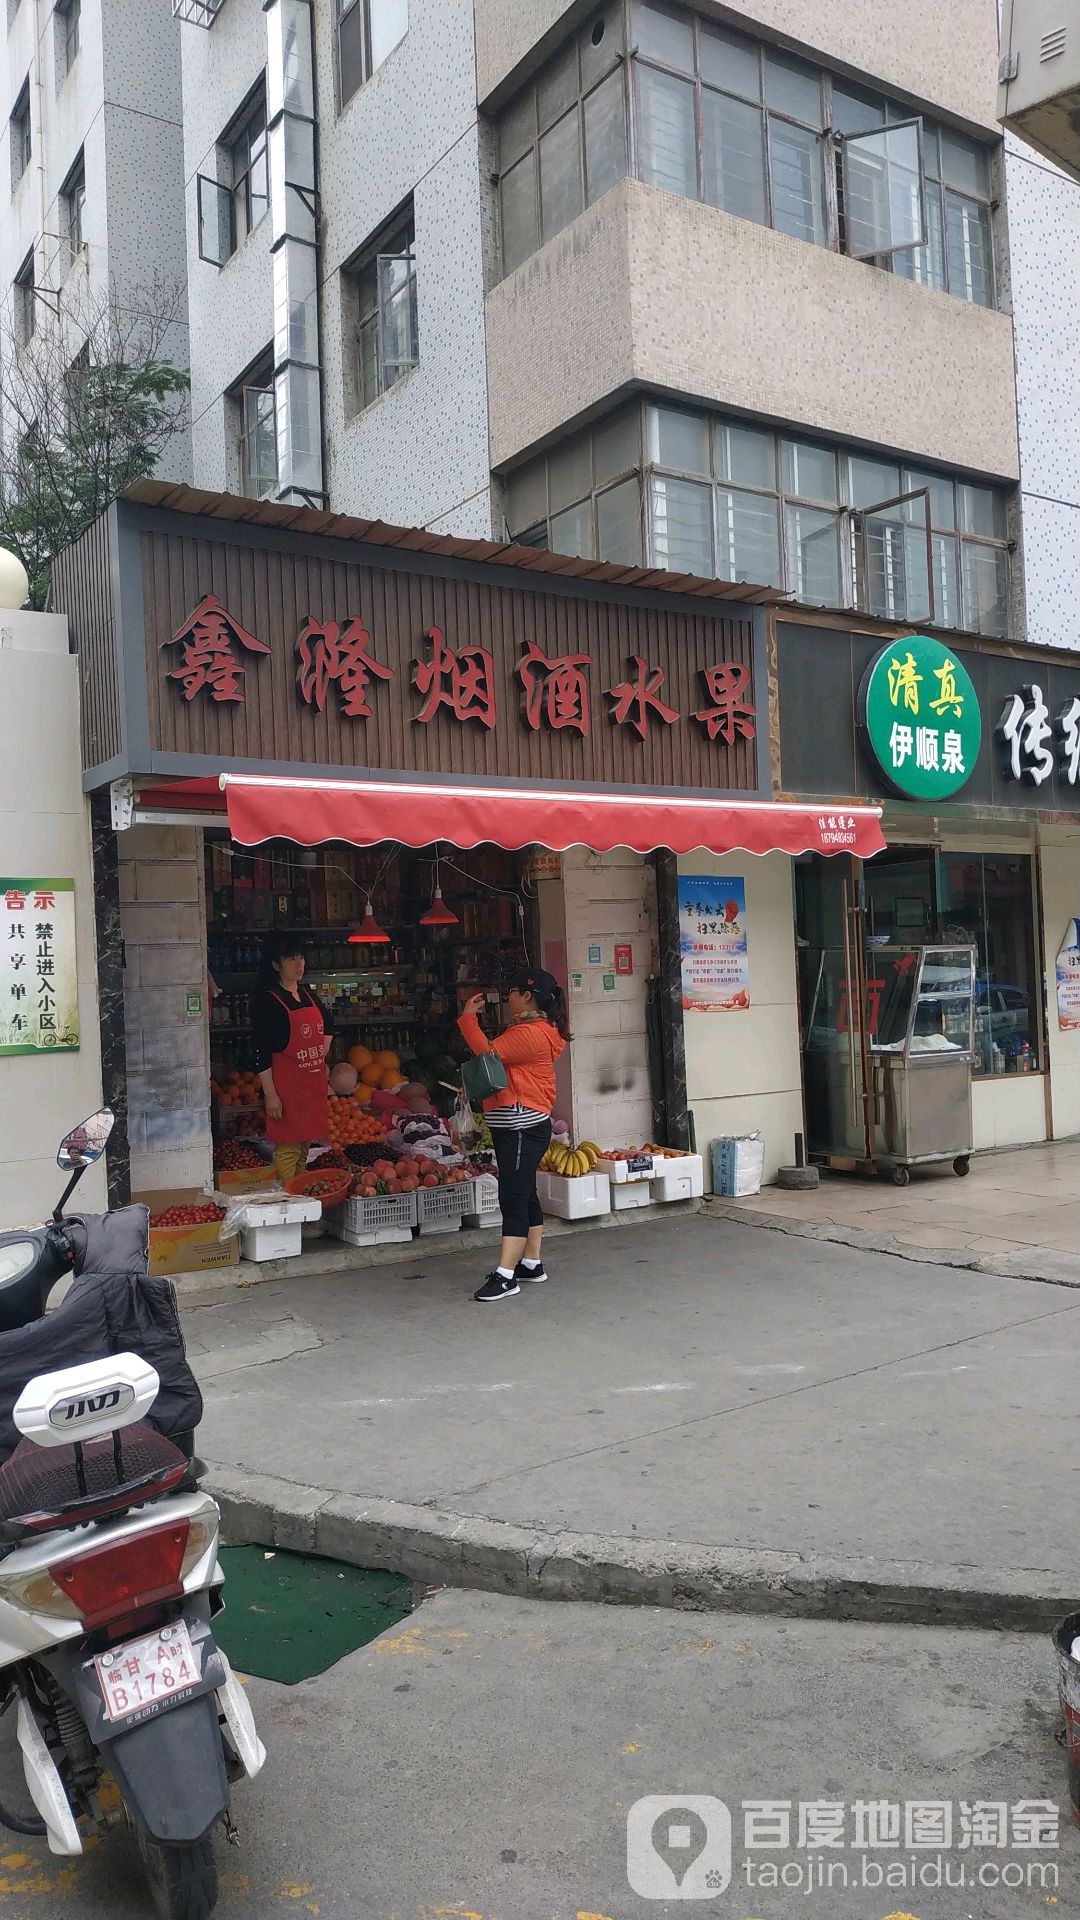 鑫隆煙酒水果商店